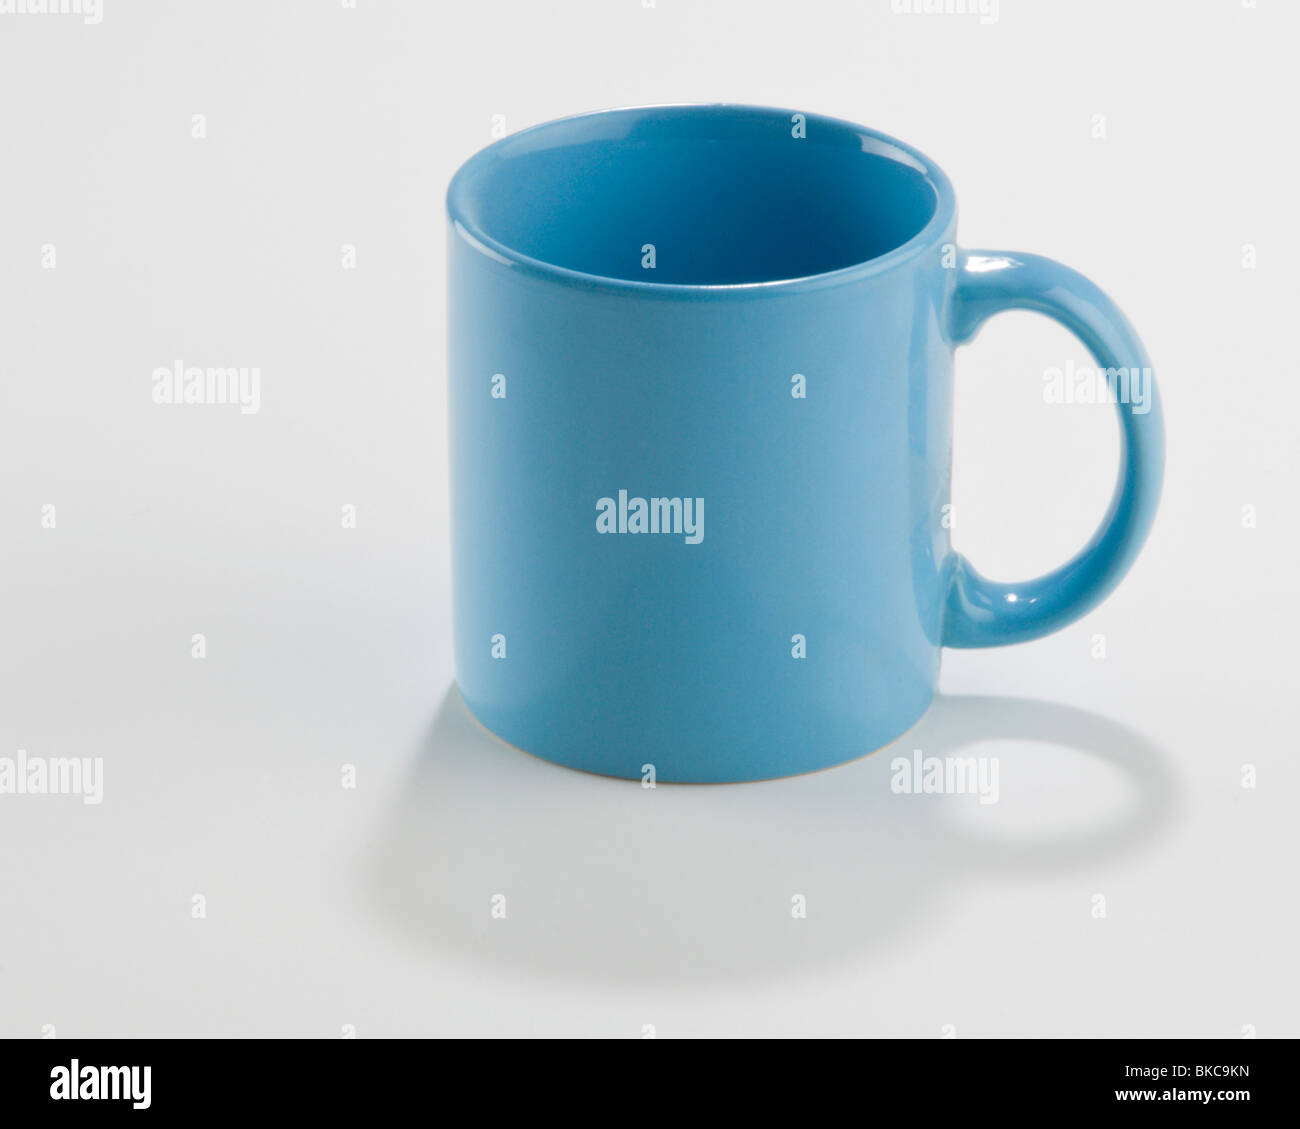 Leer Standard blau Kaffeebecher mit Griff auf der rechten Seite Stockfoto